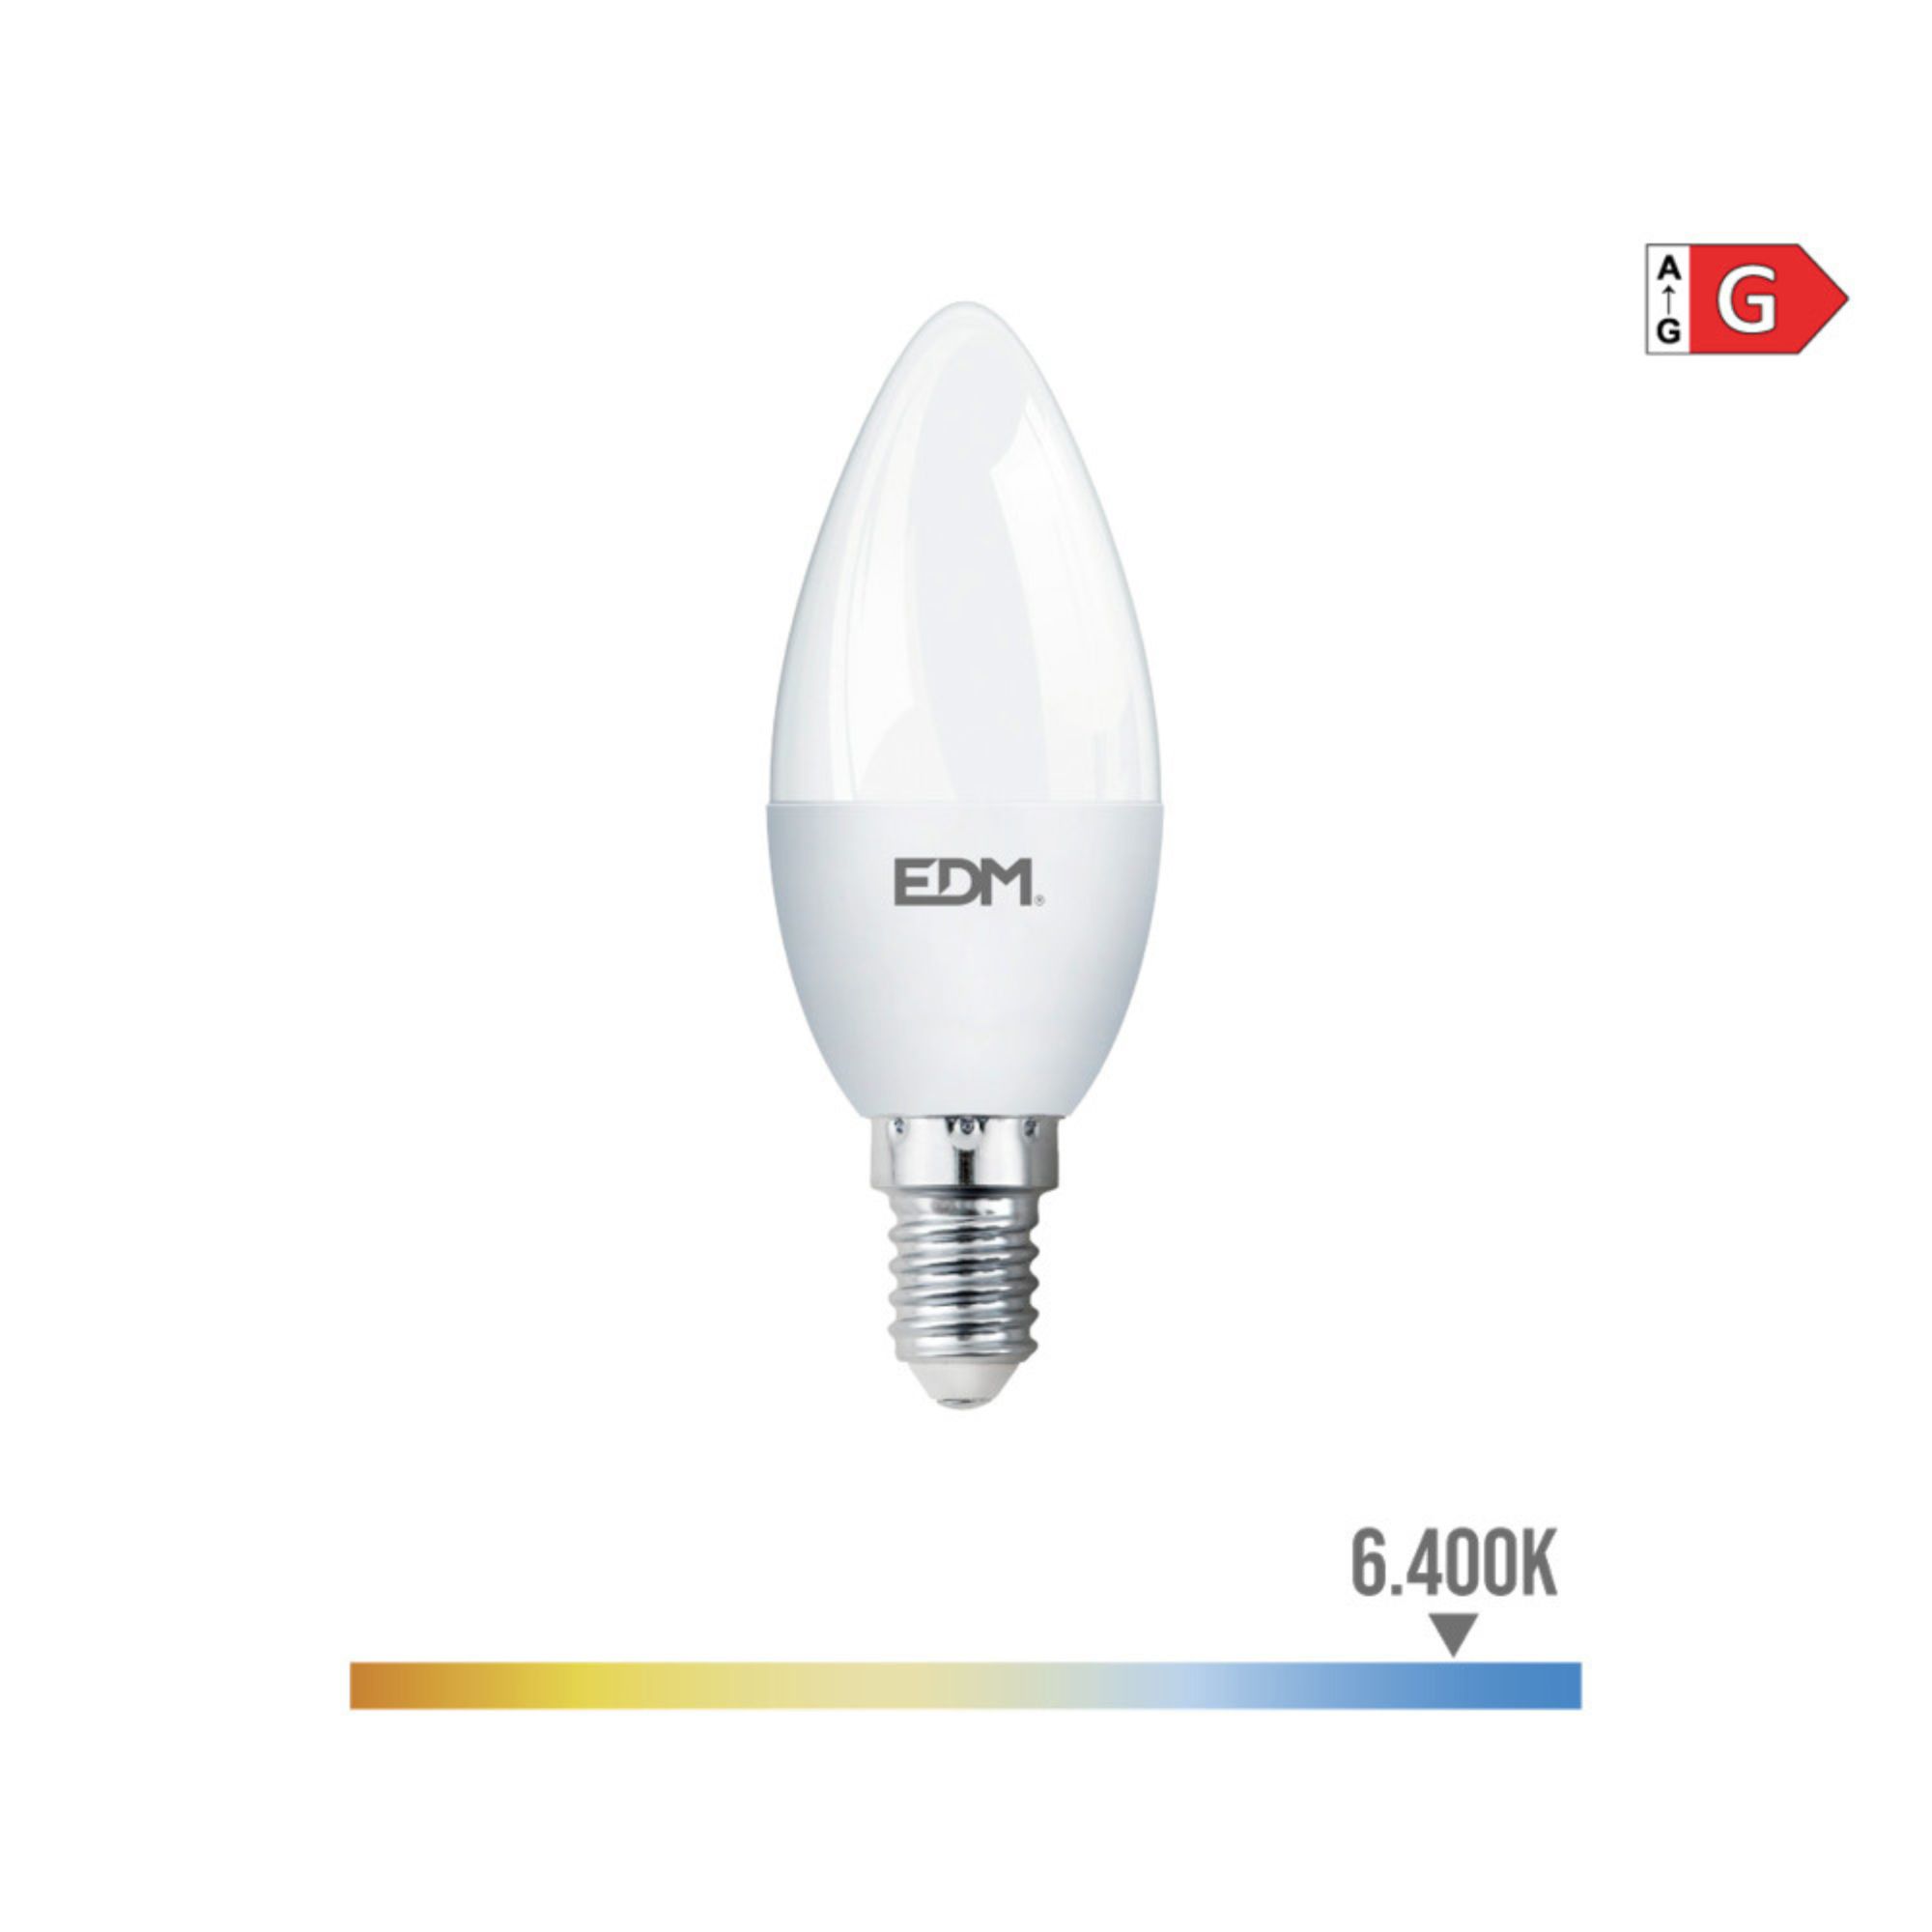 LAMPADA VELA LED E14 5W 400lum 6400 LUZ FRIA EDM